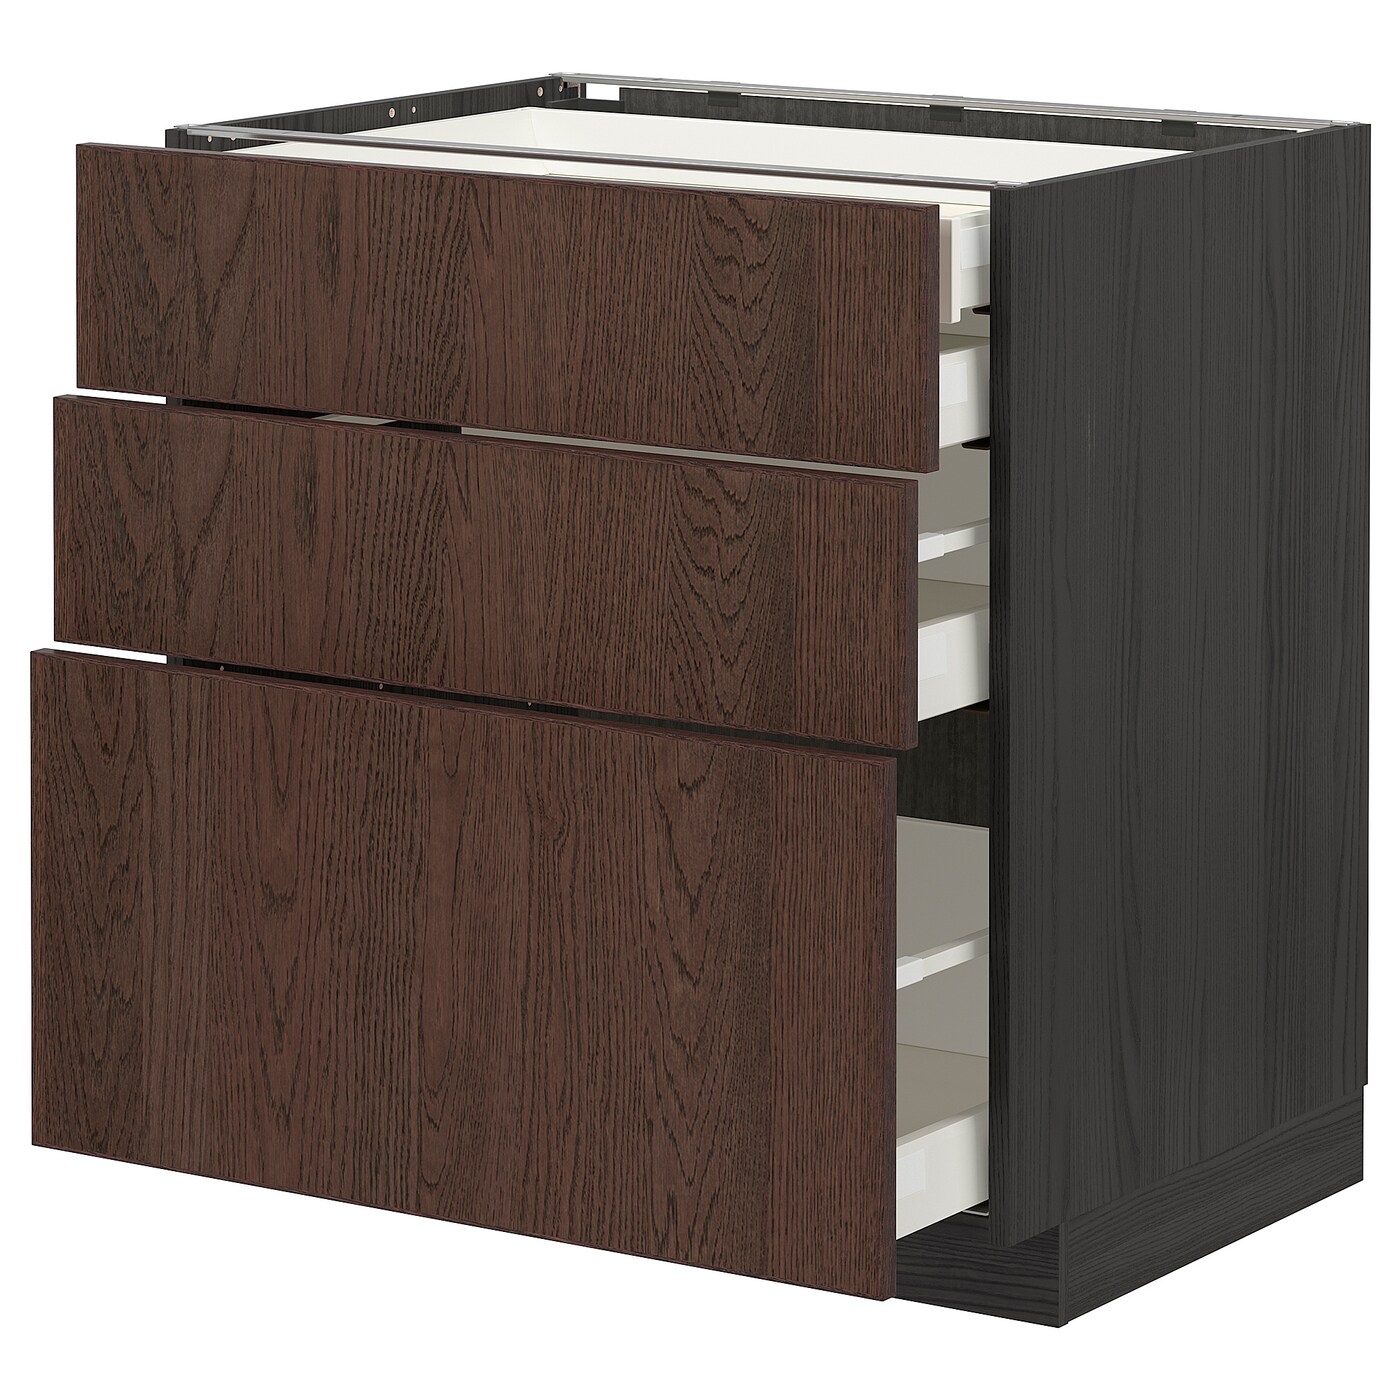 Напольный шкаф  - IKEA METOD MAXIMERA, 88x61,6x80см, черный/коричневый, МЕТОД МАКСИМЕРА ИКЕА